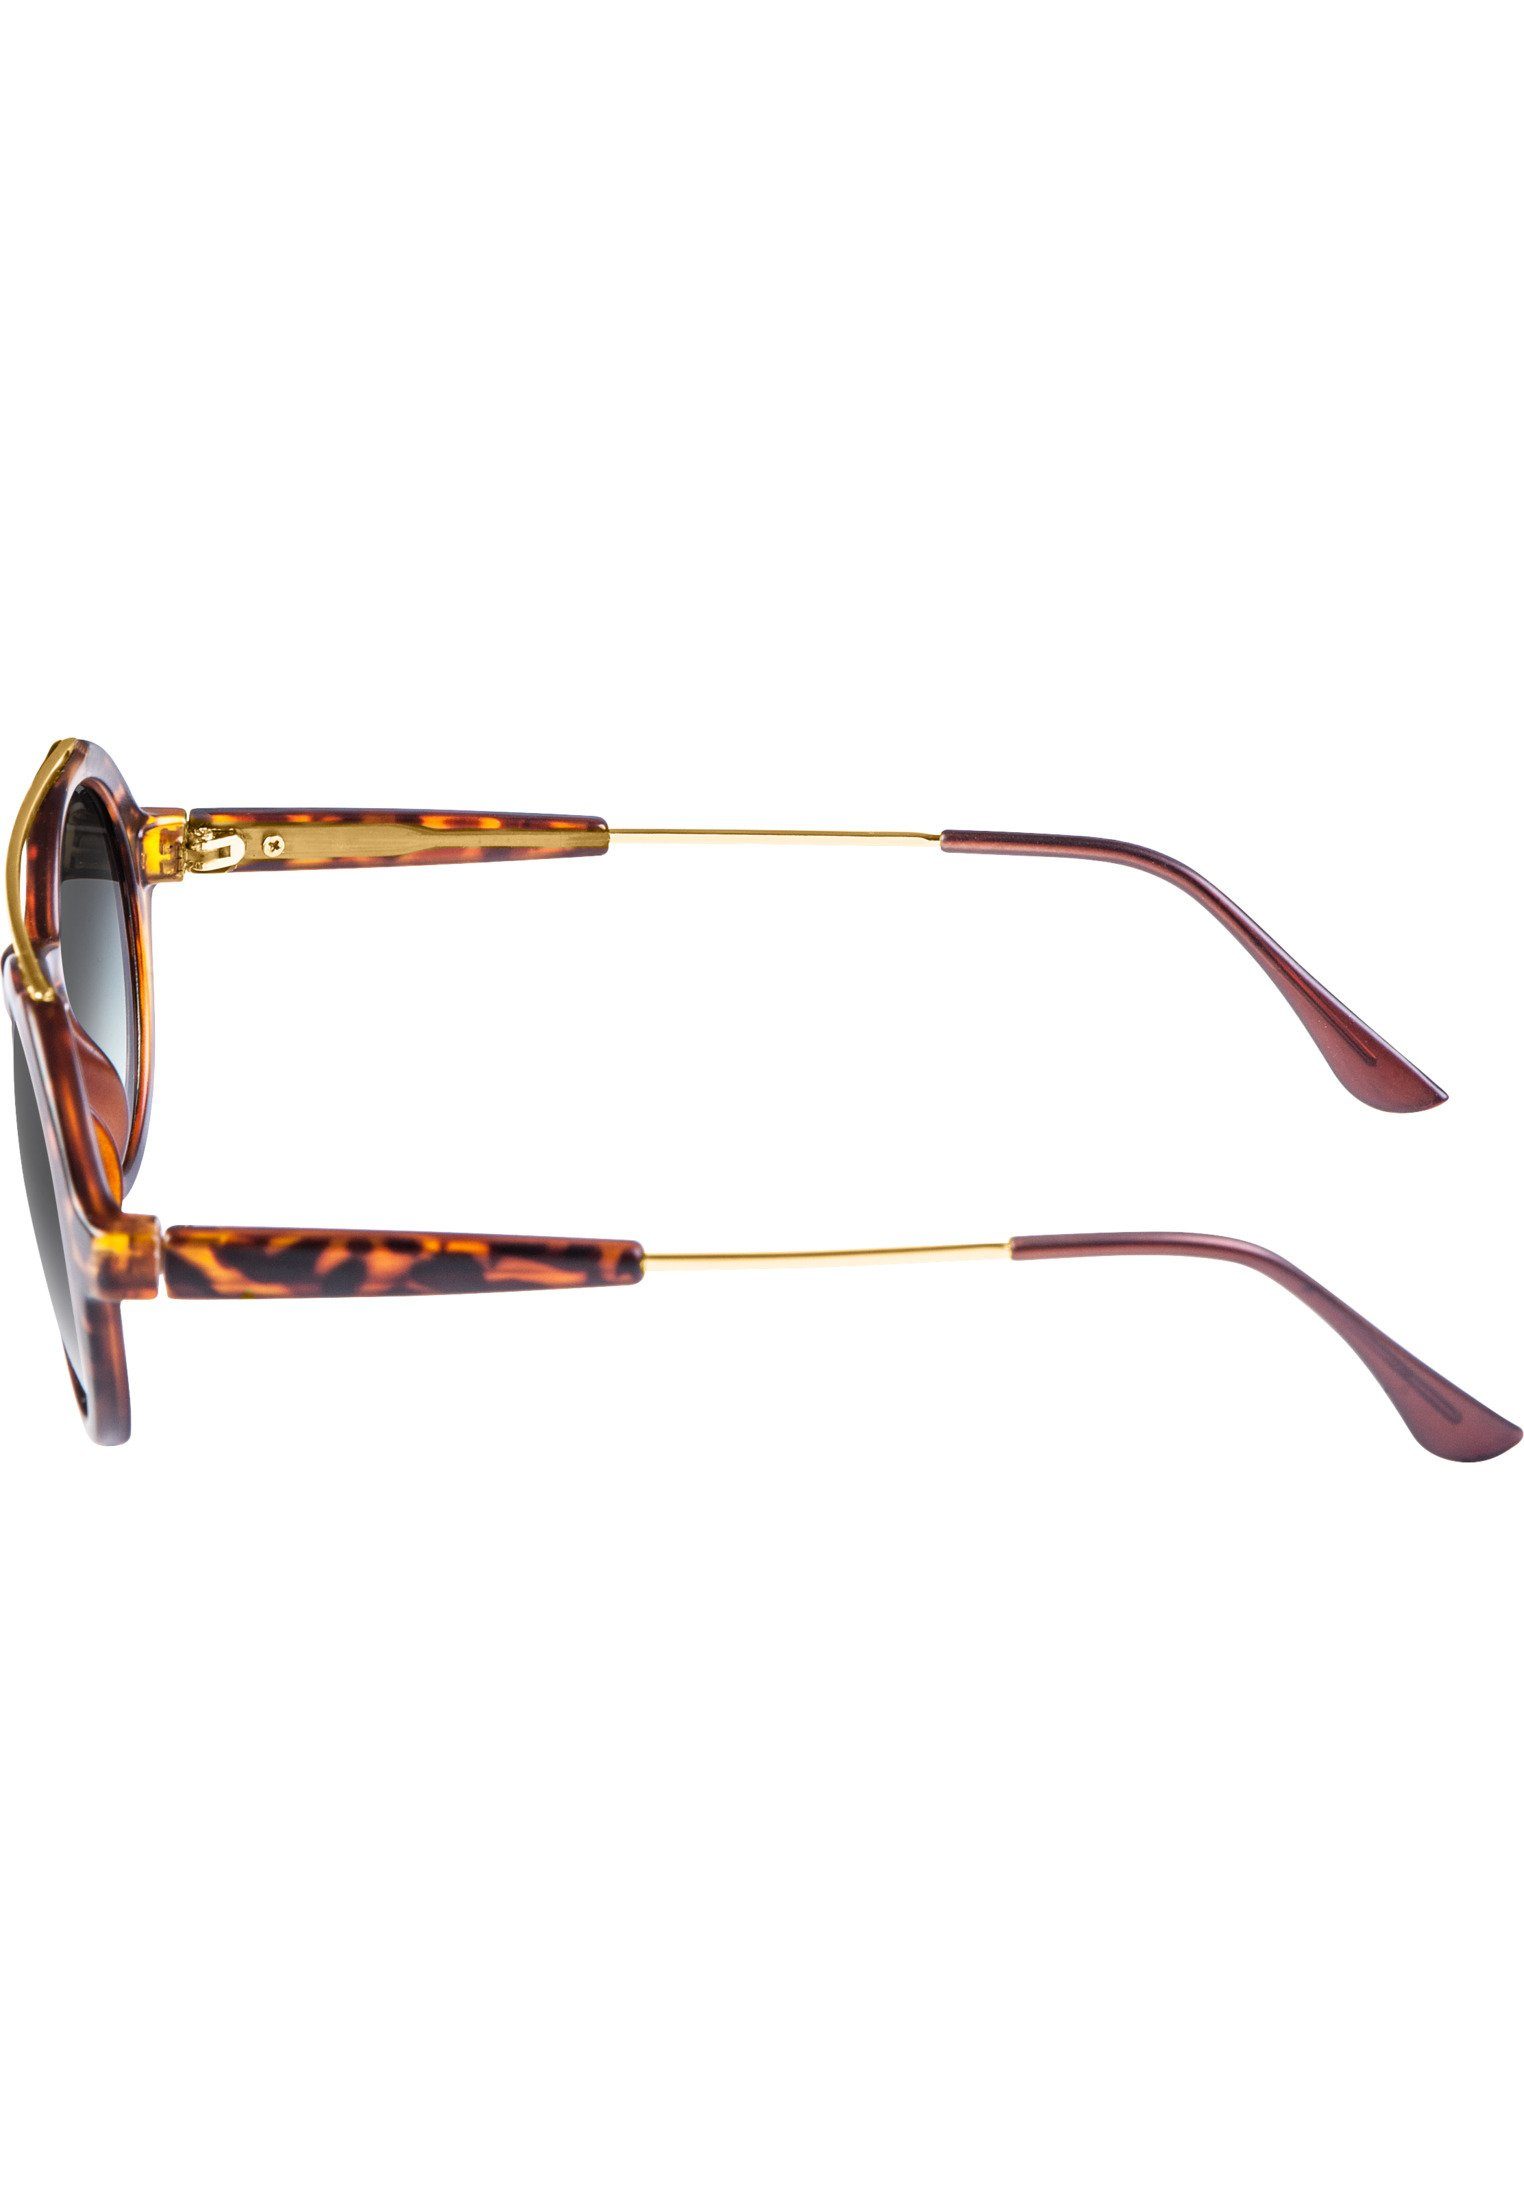 Sunglasses Retro Sonnenbrille MSTRDS havanna/grey Accessoires Space